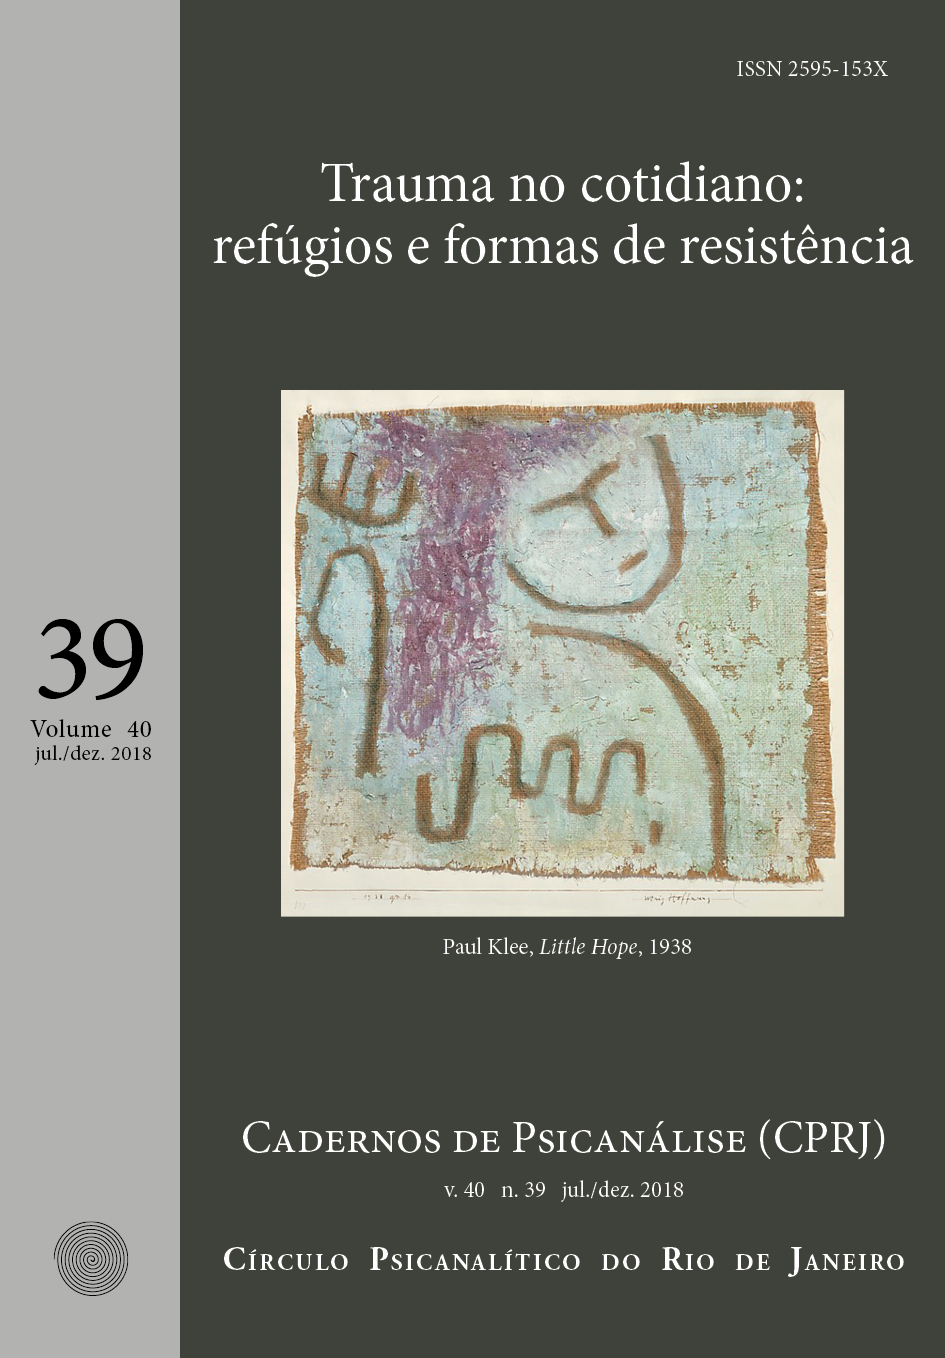 Revista Cadernos de Psicanálise, volume 40, número 39, período de julho a dezembro de 2018. Tema: trauma no coditiano: refúgios e formas de resistência